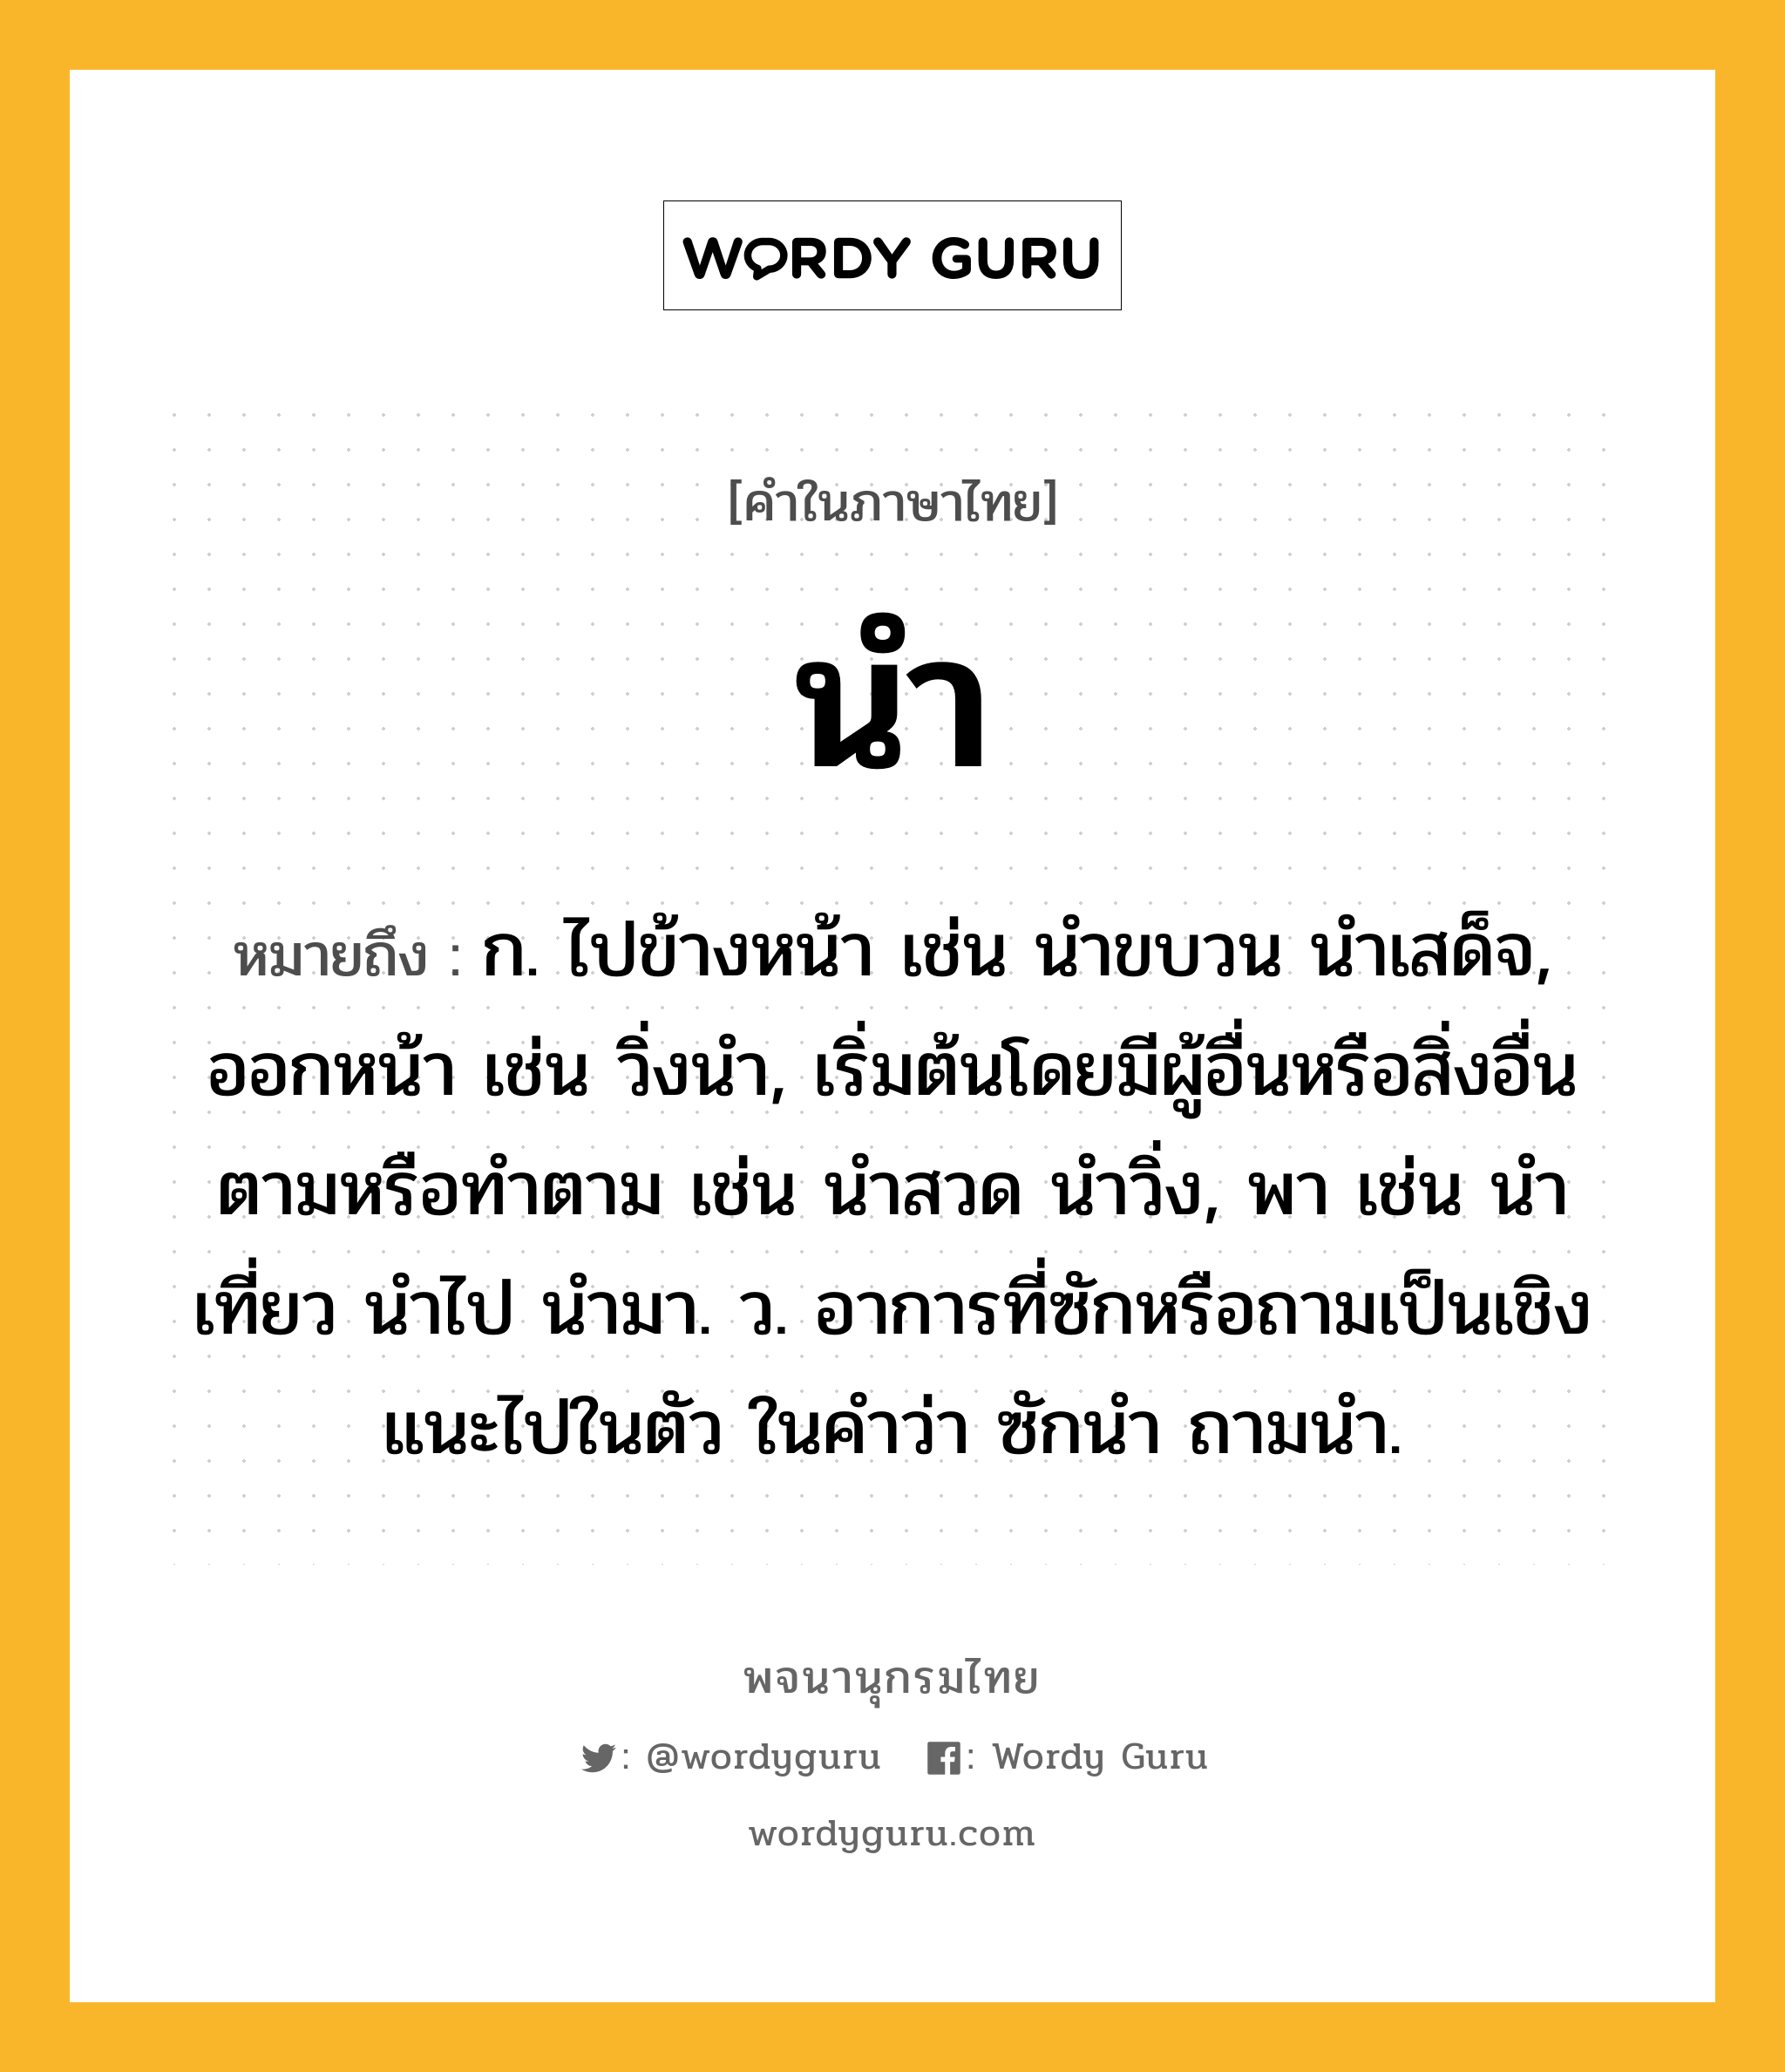 นำ หมายถึงอะไร?, คำในภาษาไทย นำ หมายถึง ก. ไปข้างหน้า เช่น นําขบวน นําเสด็จ, ออกหน้า เช่น วิ่งนํา, เริ่มต้นโดยมีผู้อื่นหรือสิ่งอื่นตามหรือทําตาม เช่น นําสวด นําวิ่ง, พา เช่น นําเที่ยว นําไป นํามา. ว. อาการที่ซักหรือถามเป็นเชิงแนะไปในตัว ในคําว่า ซักนํา ถามนํา.